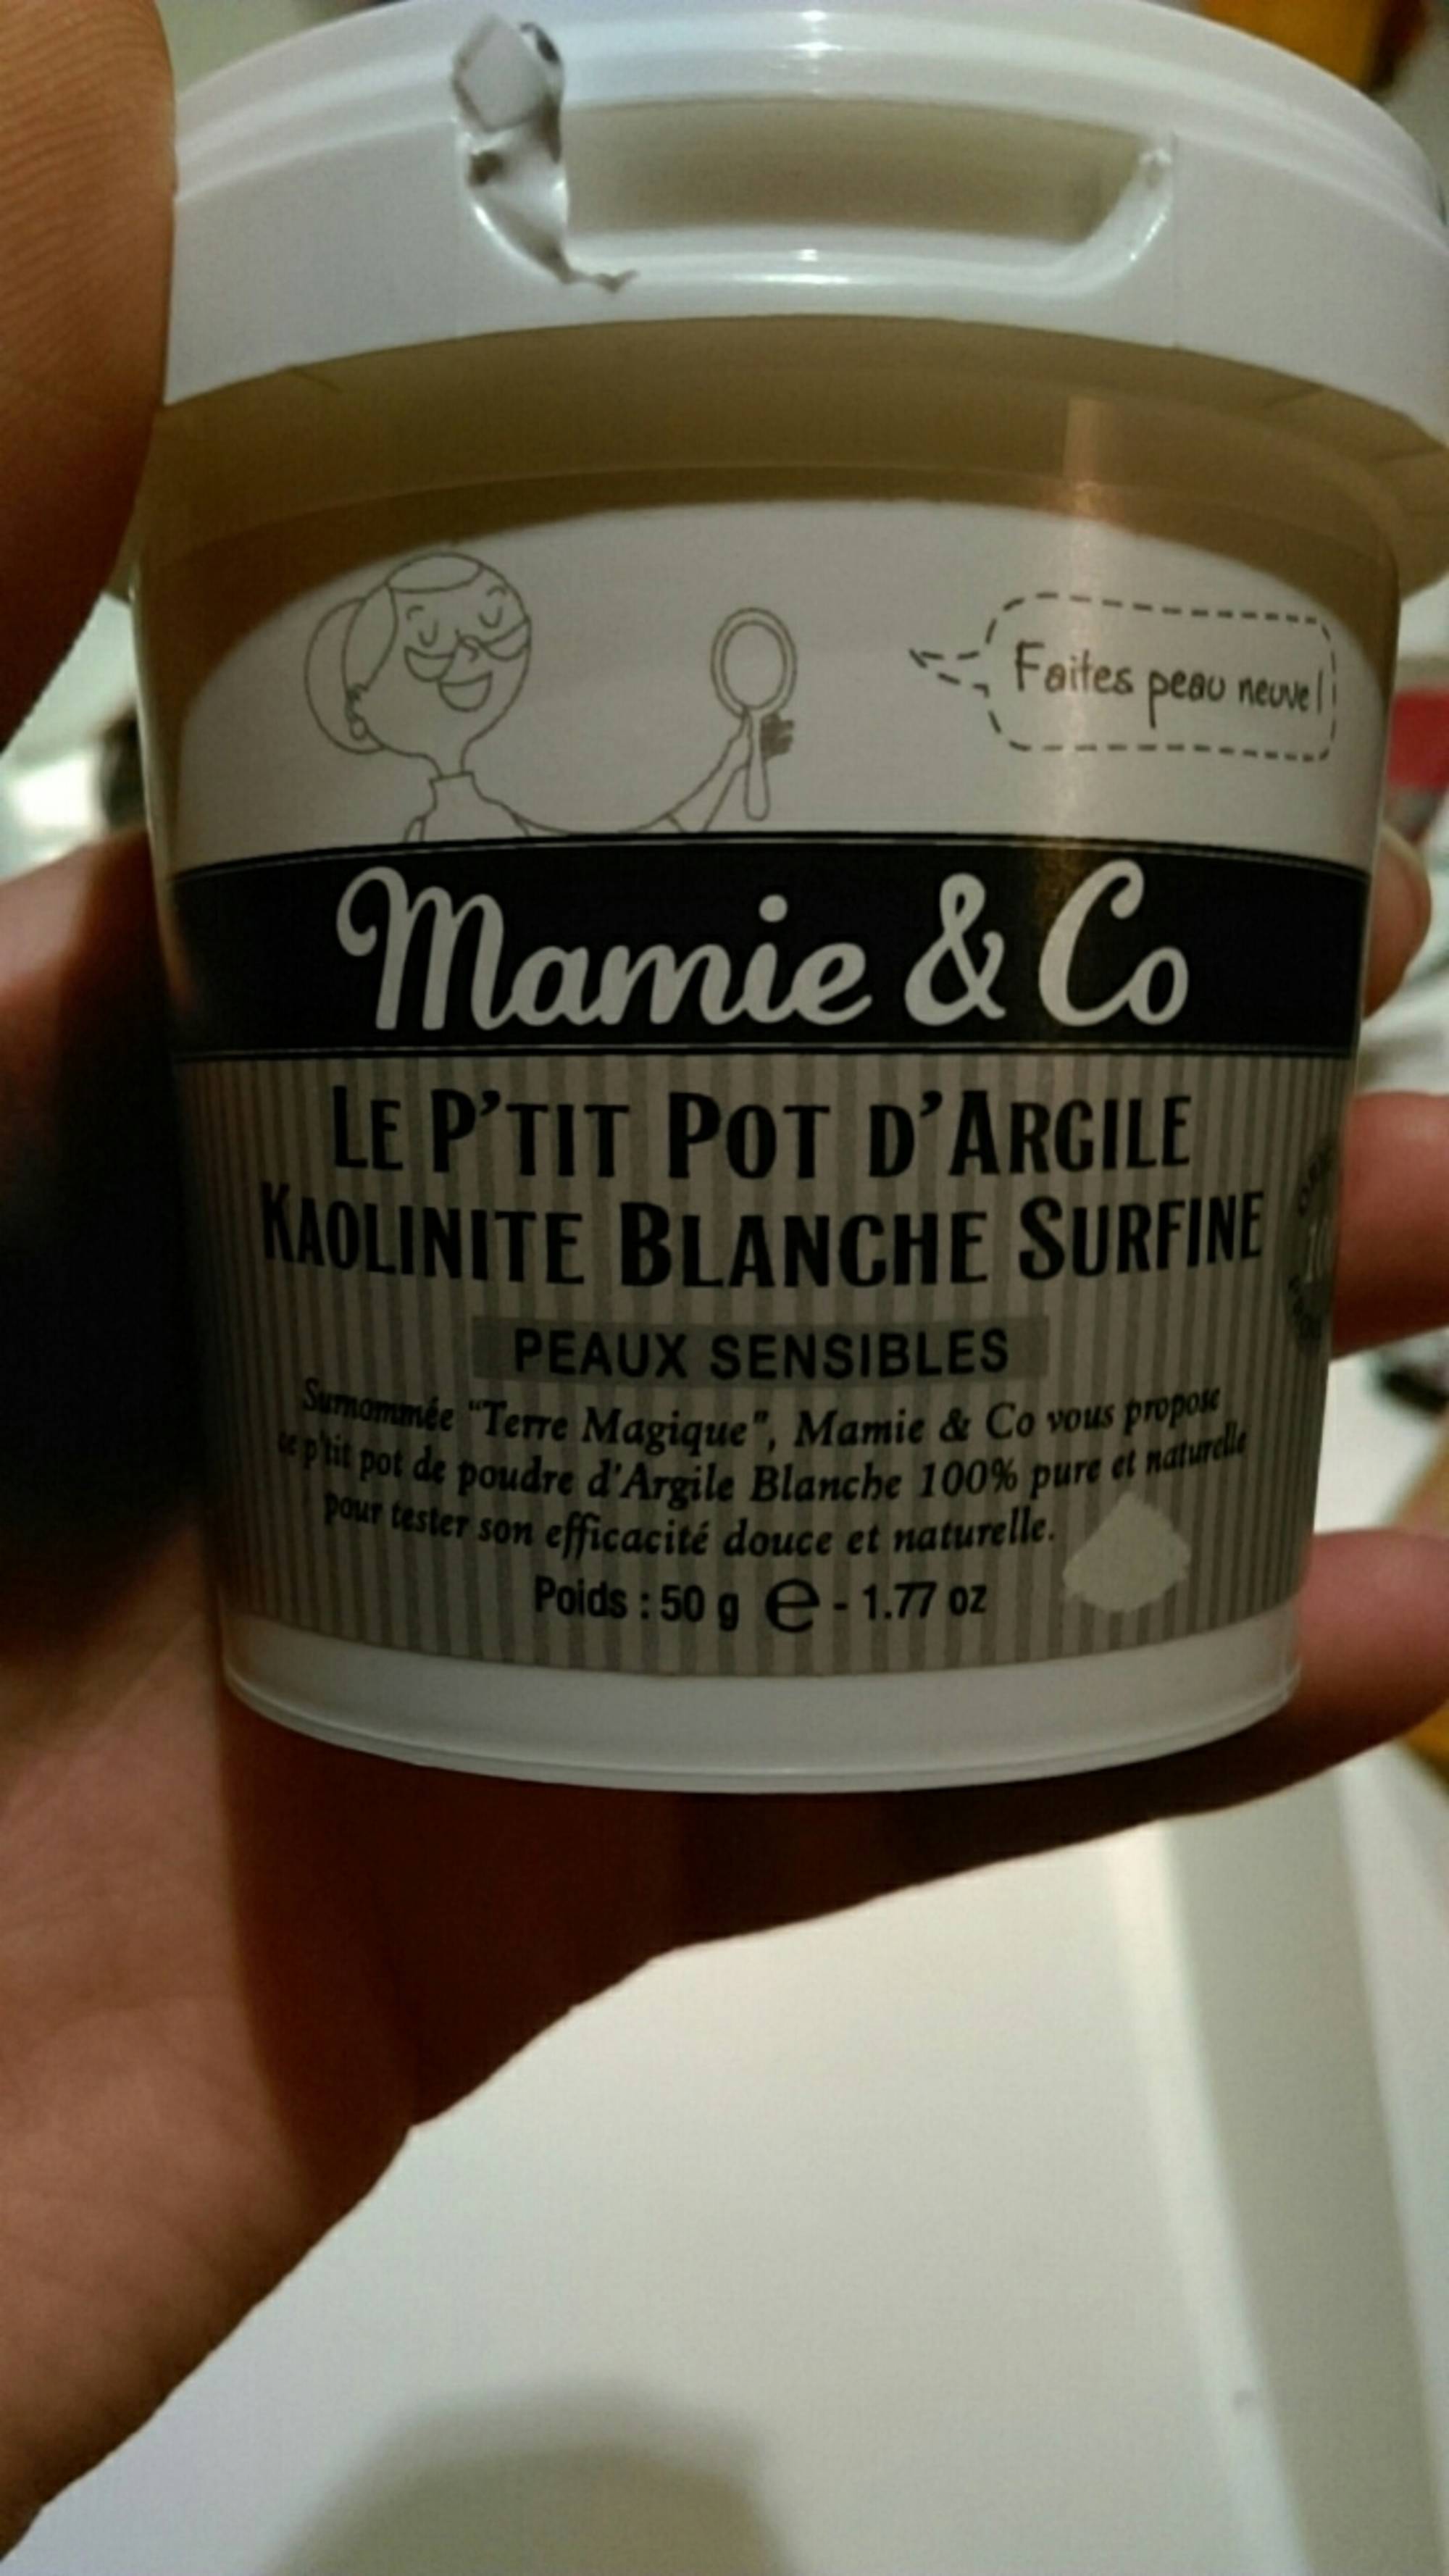 MAMIE & CO - Le p'tit pot d'argile - Kaolinite blanche surfine